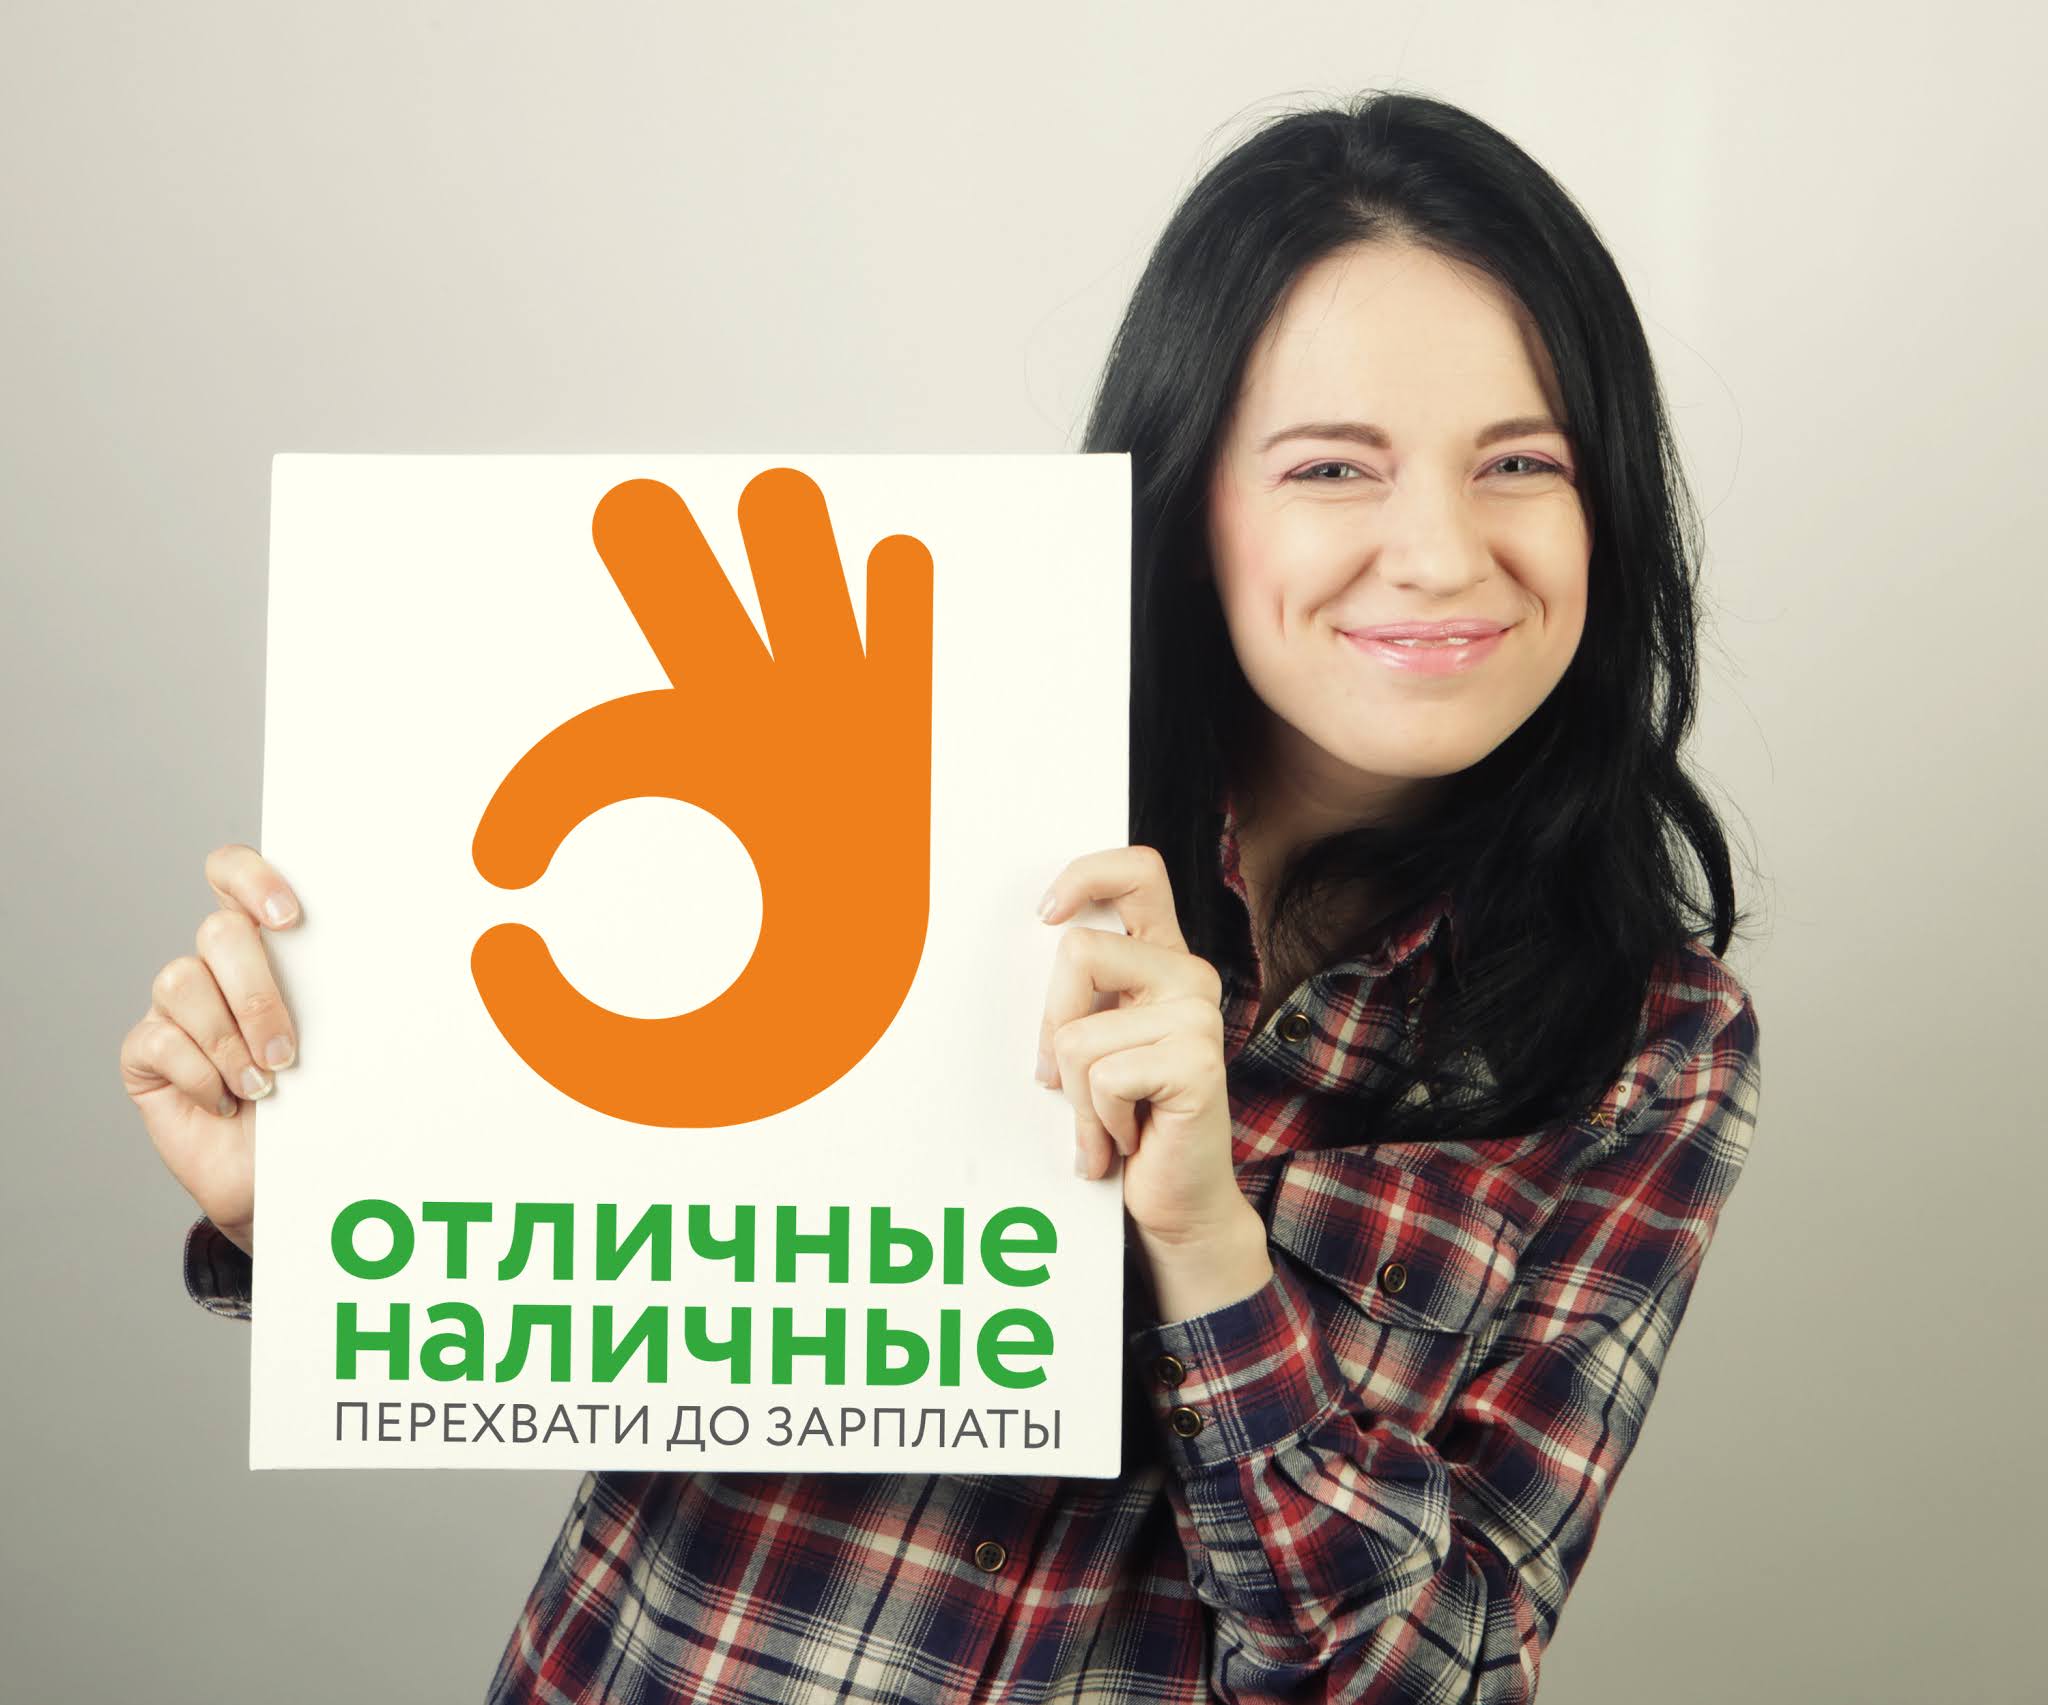 Займ наличными в Челябинске в день обращения сайт мфо на карту